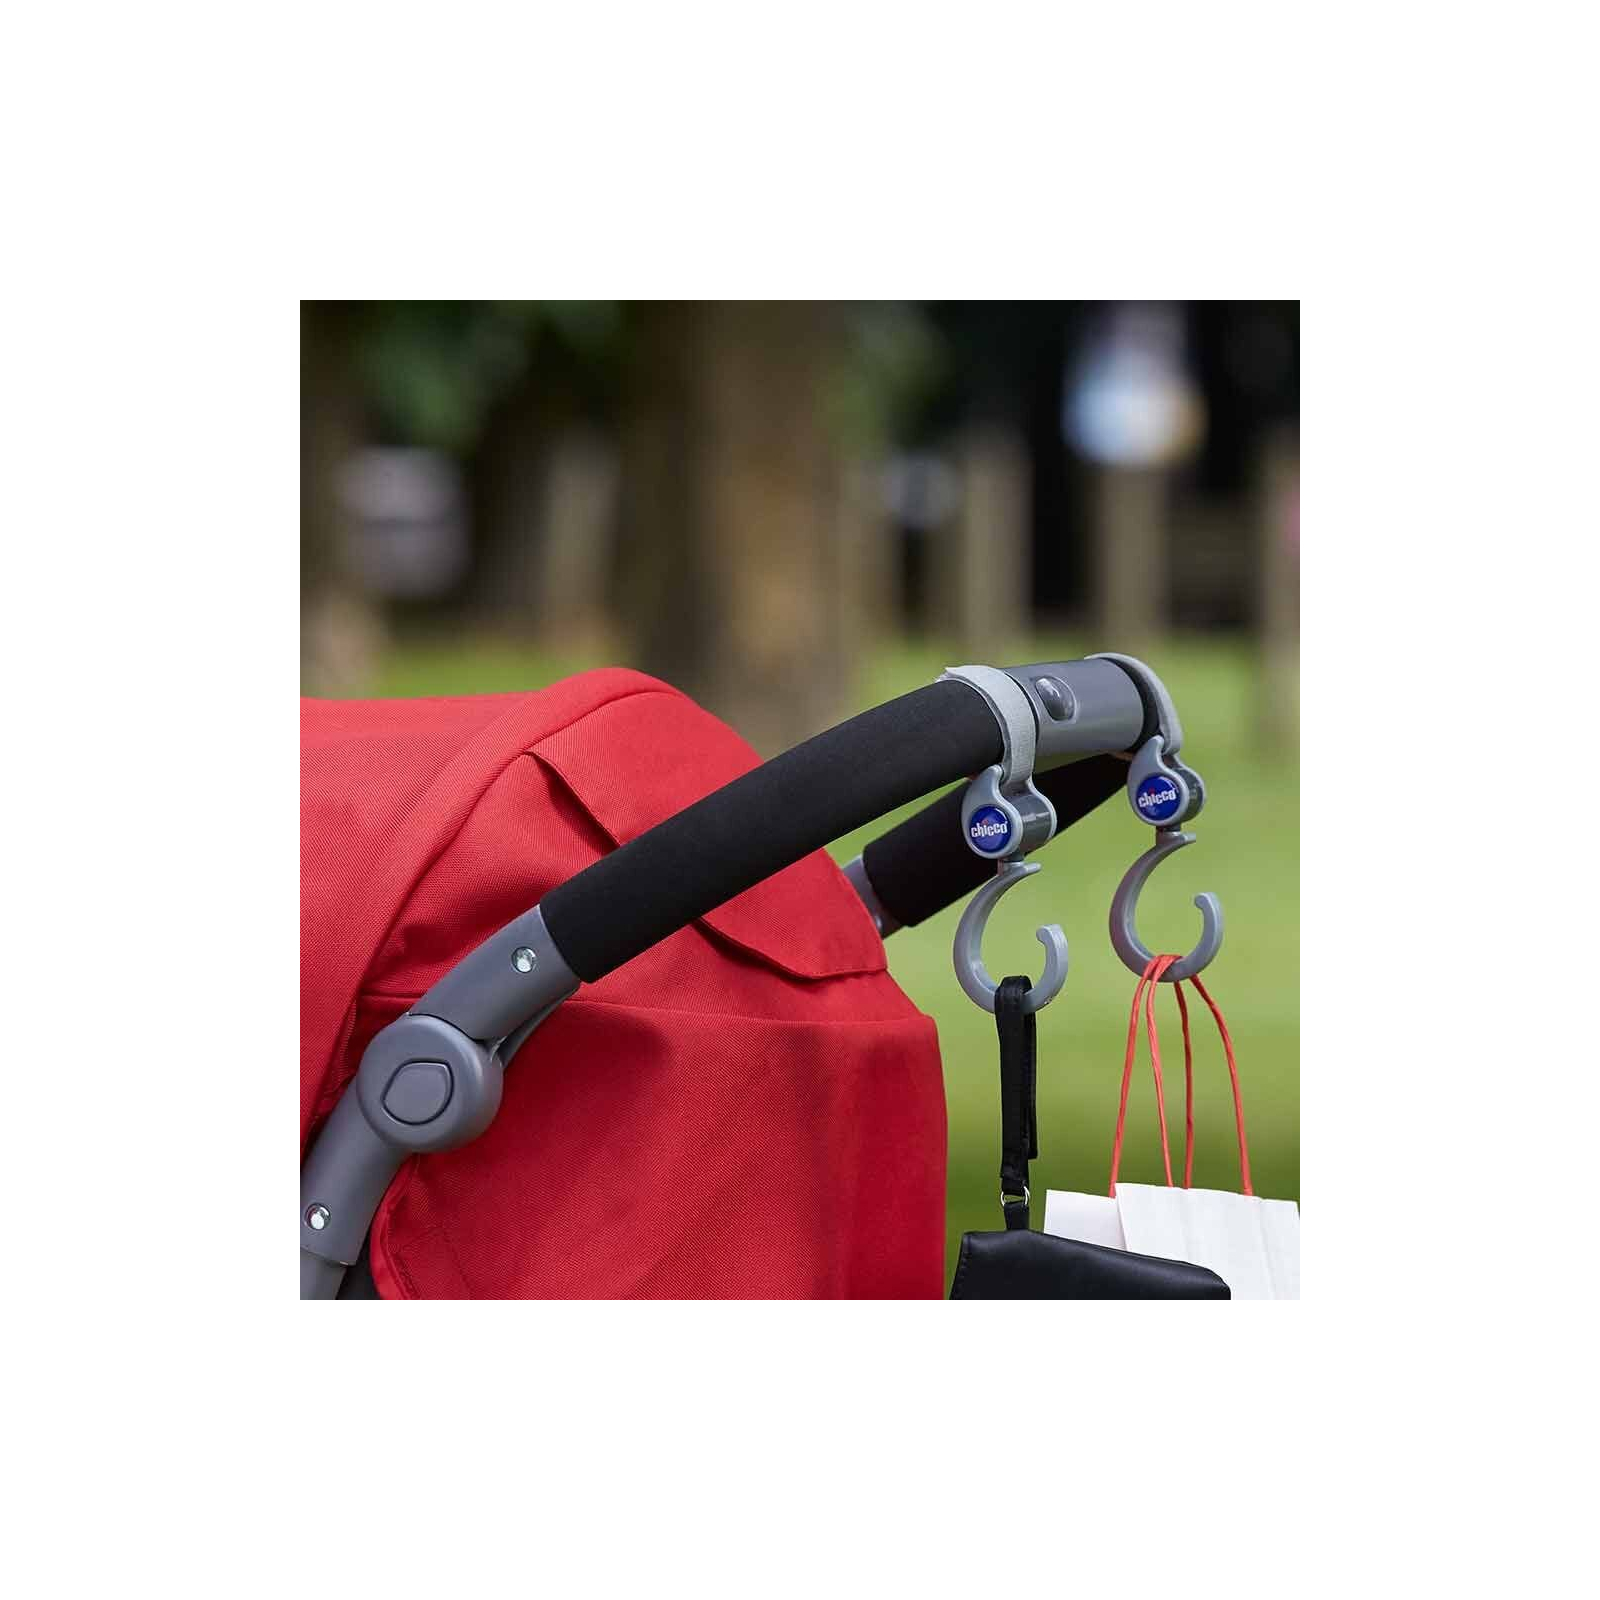 Аксессуар для коляски Chicco Крючок для сумки универсальный крепеж (79813.47) изображение 2